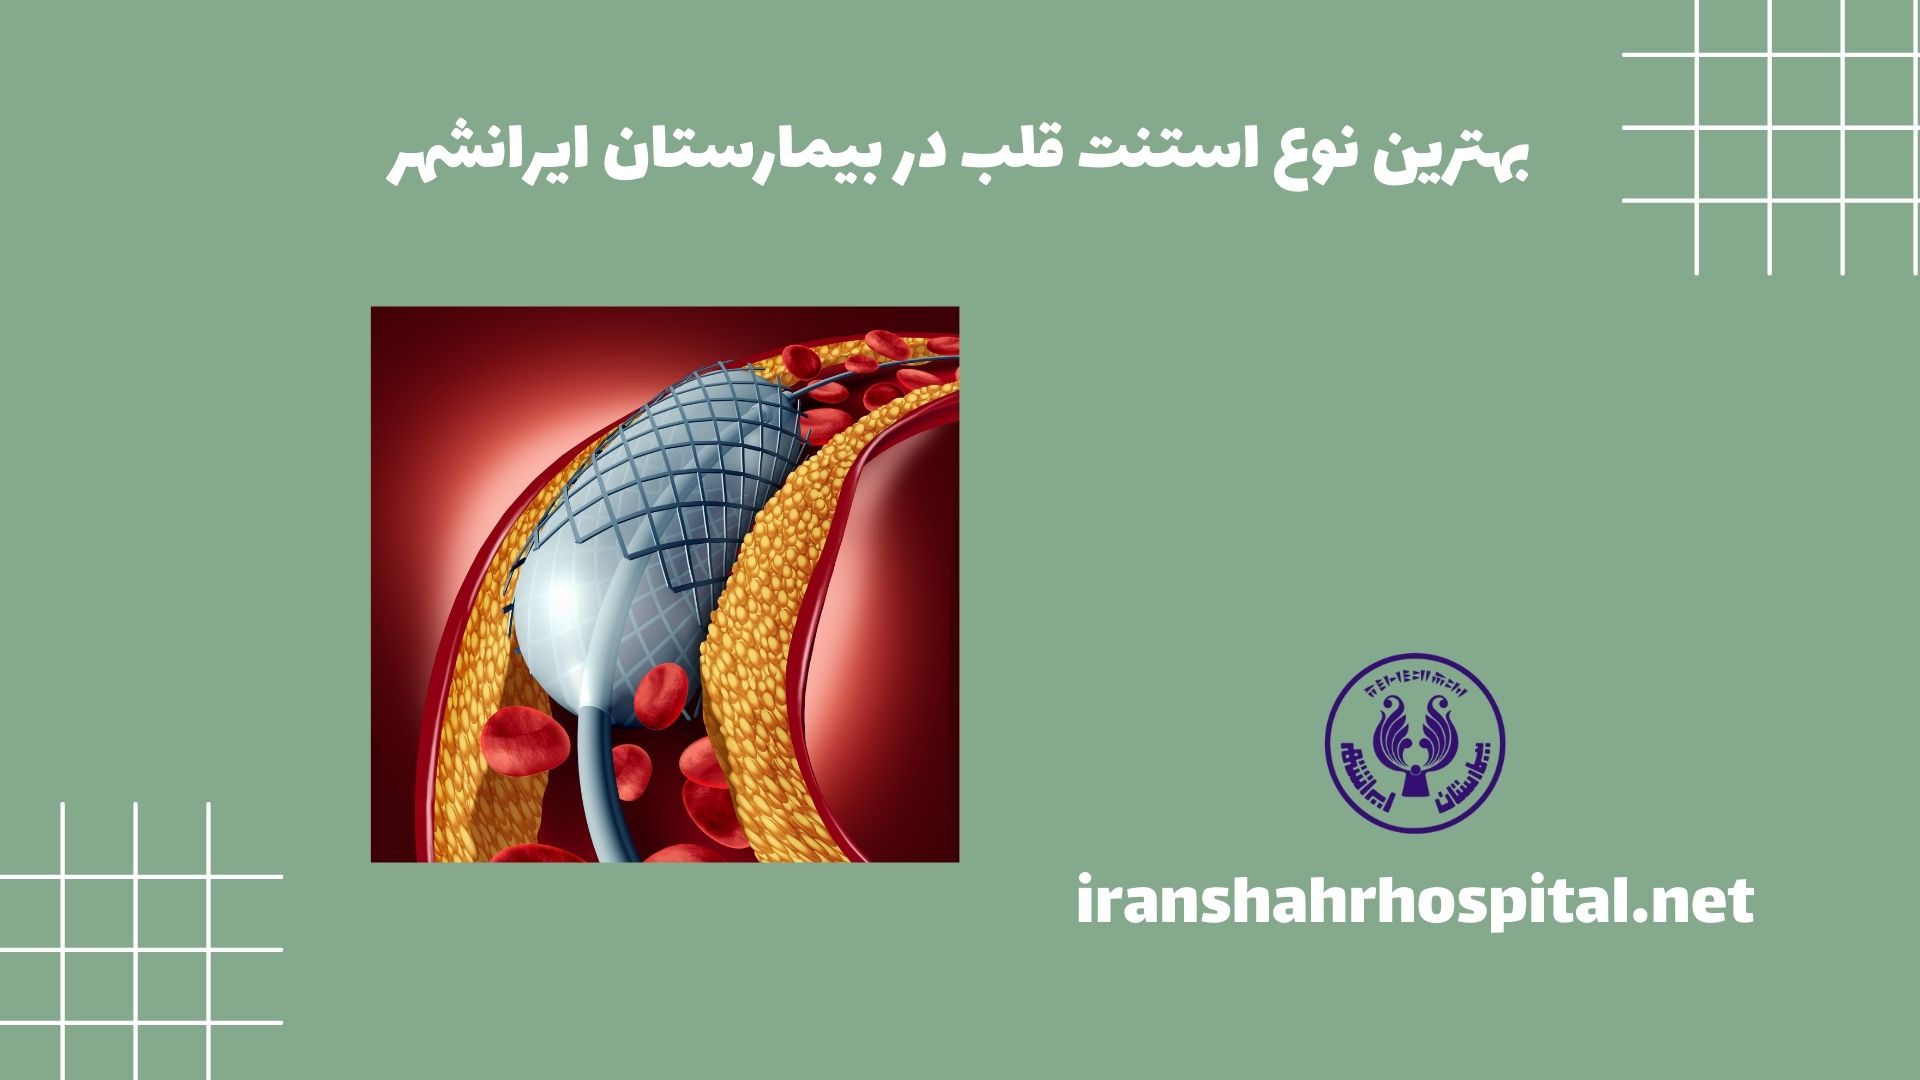 بهترین نوع استنت قلب در بیمارستان ایرانشهر